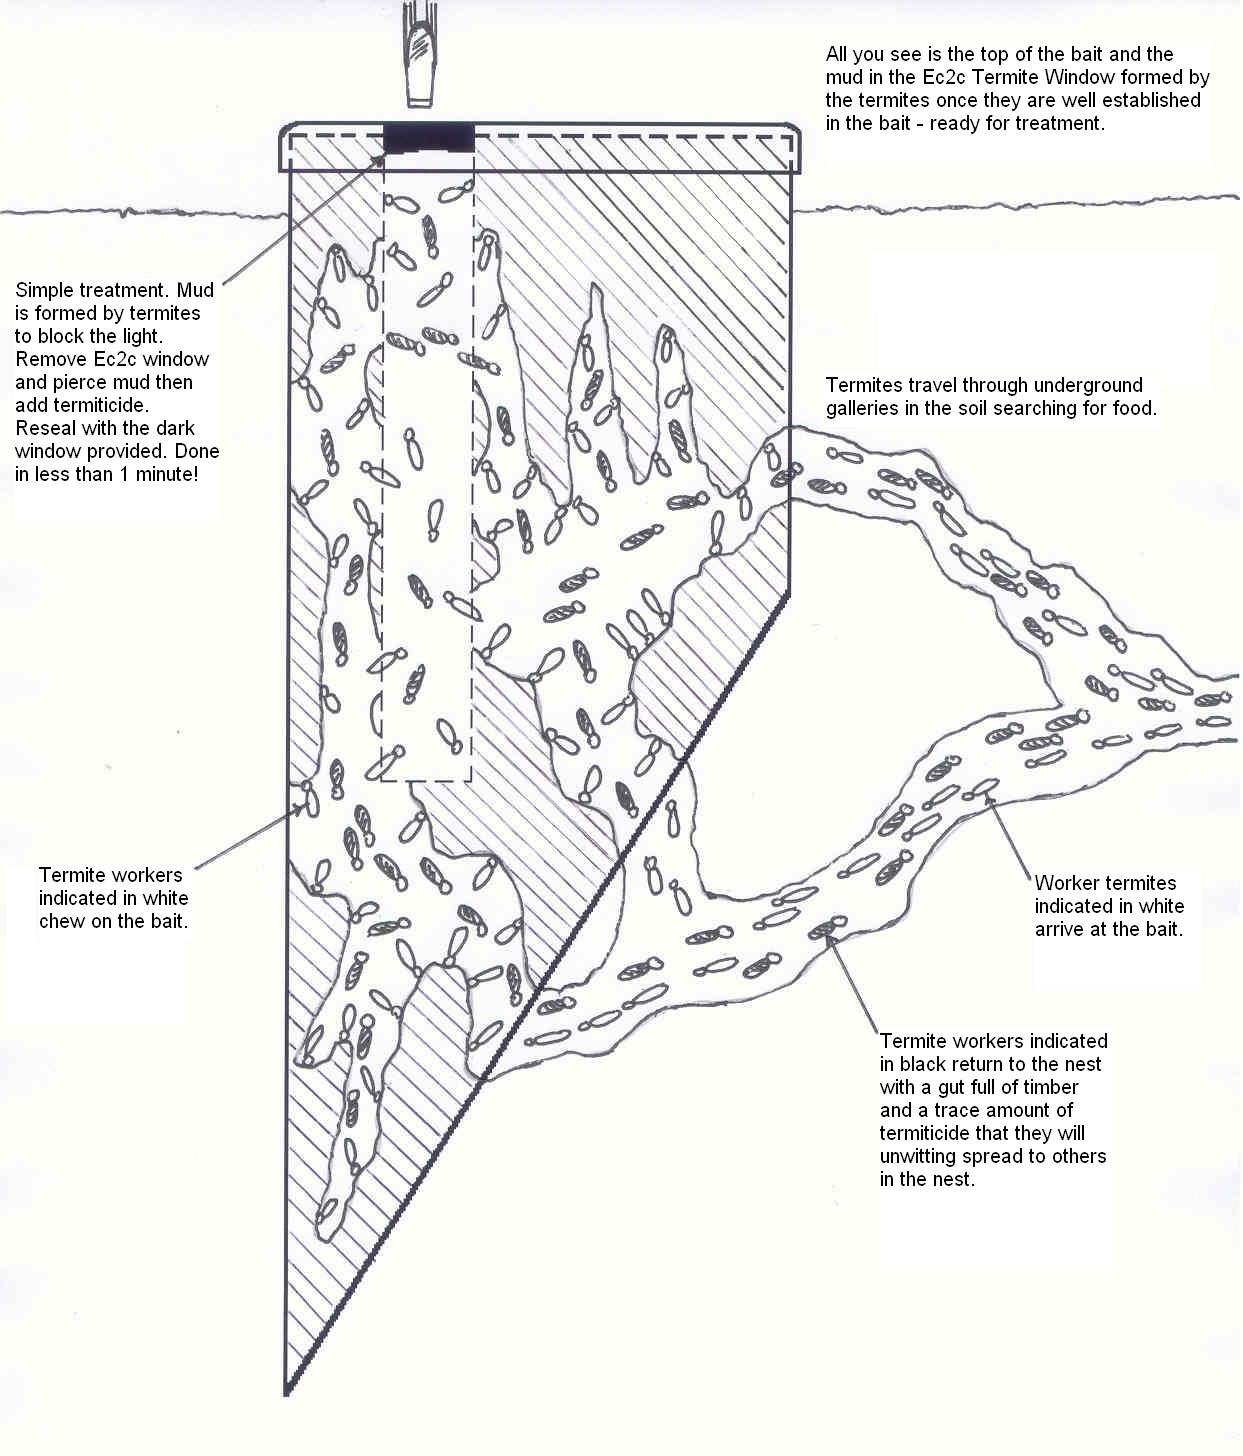 Details about   10 Boxes DIY Termite Bait System Coloni Eliminate Termite Killing Control DHL 